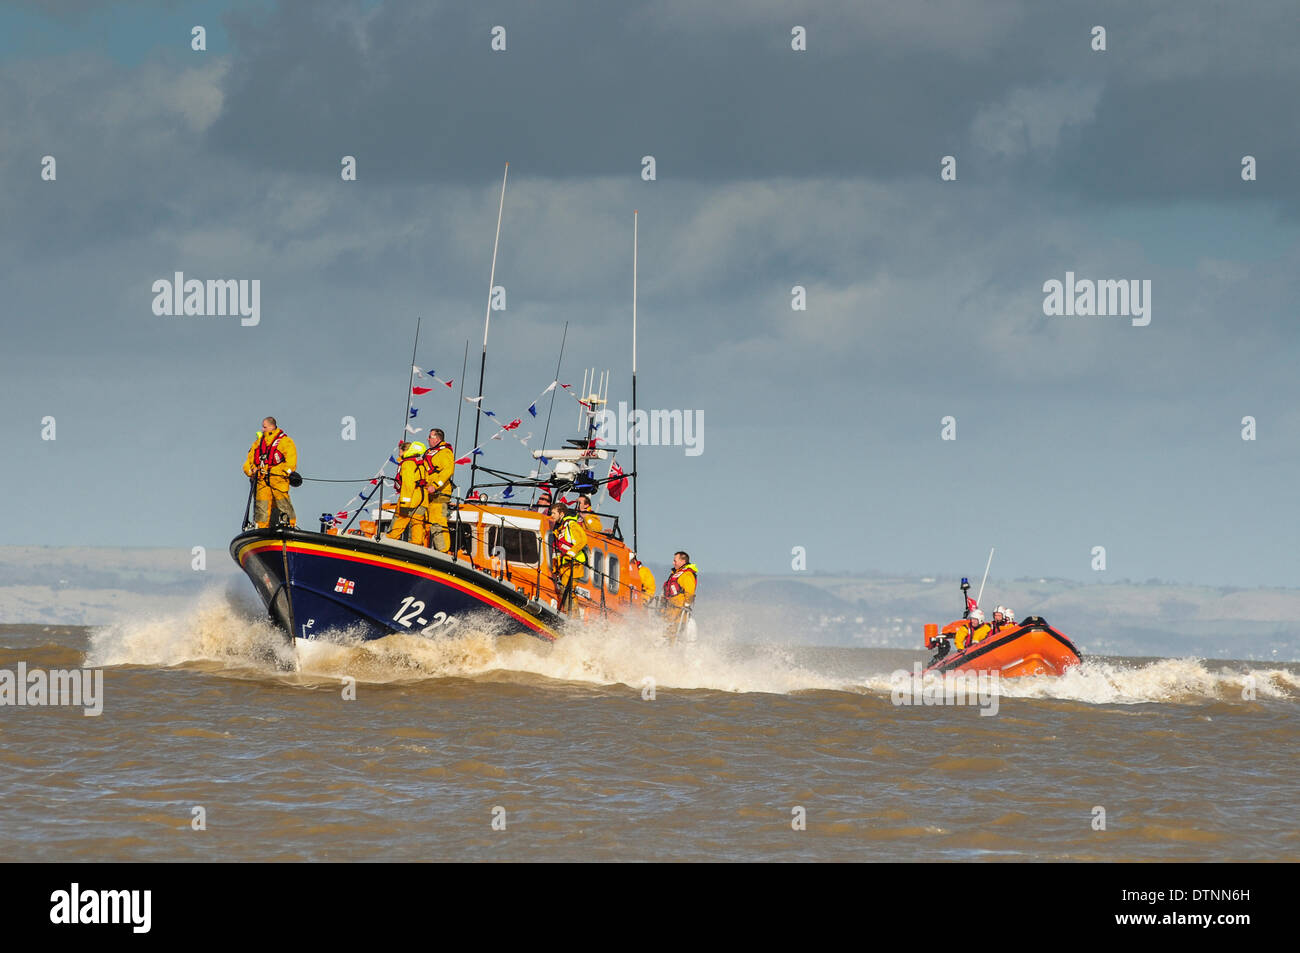 Dungeness, Kent, Regno Unito. Il 21 febbraio 2014. La nuova imbarcazione di salvataggio di Shannon arriva mettendo su una spettacolare esibizione di potenza e manovrabilità. Credito: David Burr/Alamy Live News Foto Stock